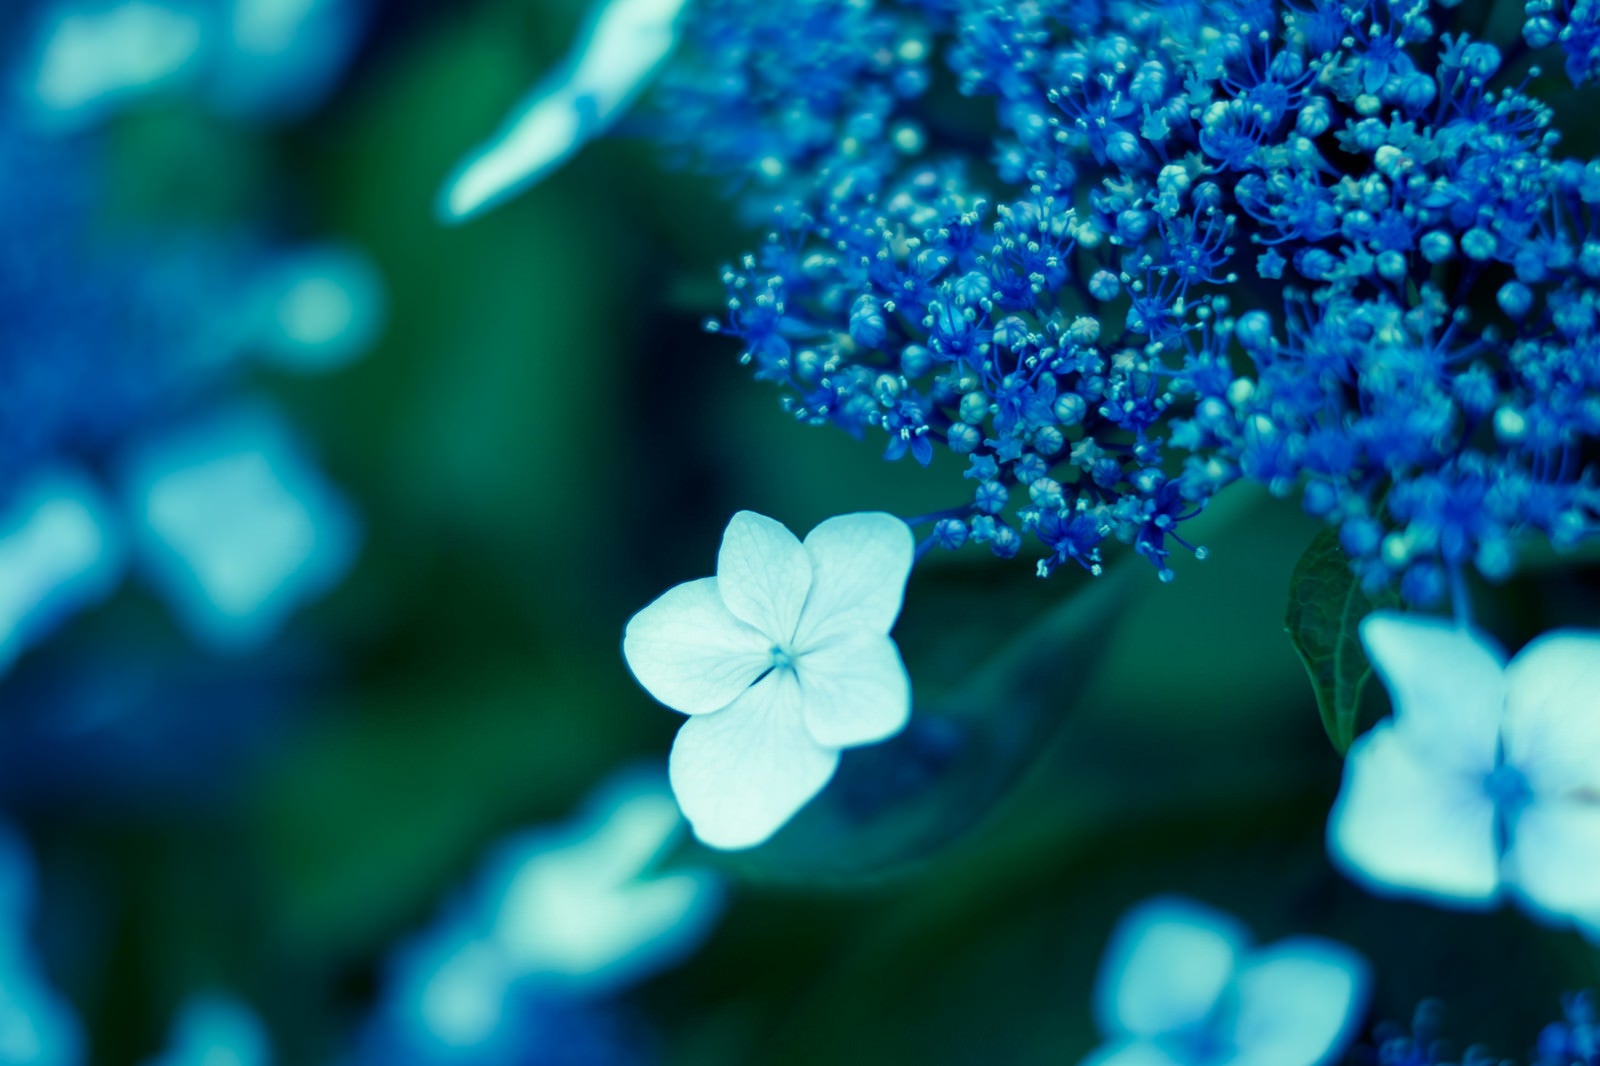 「ガクアジサイの花」の写真